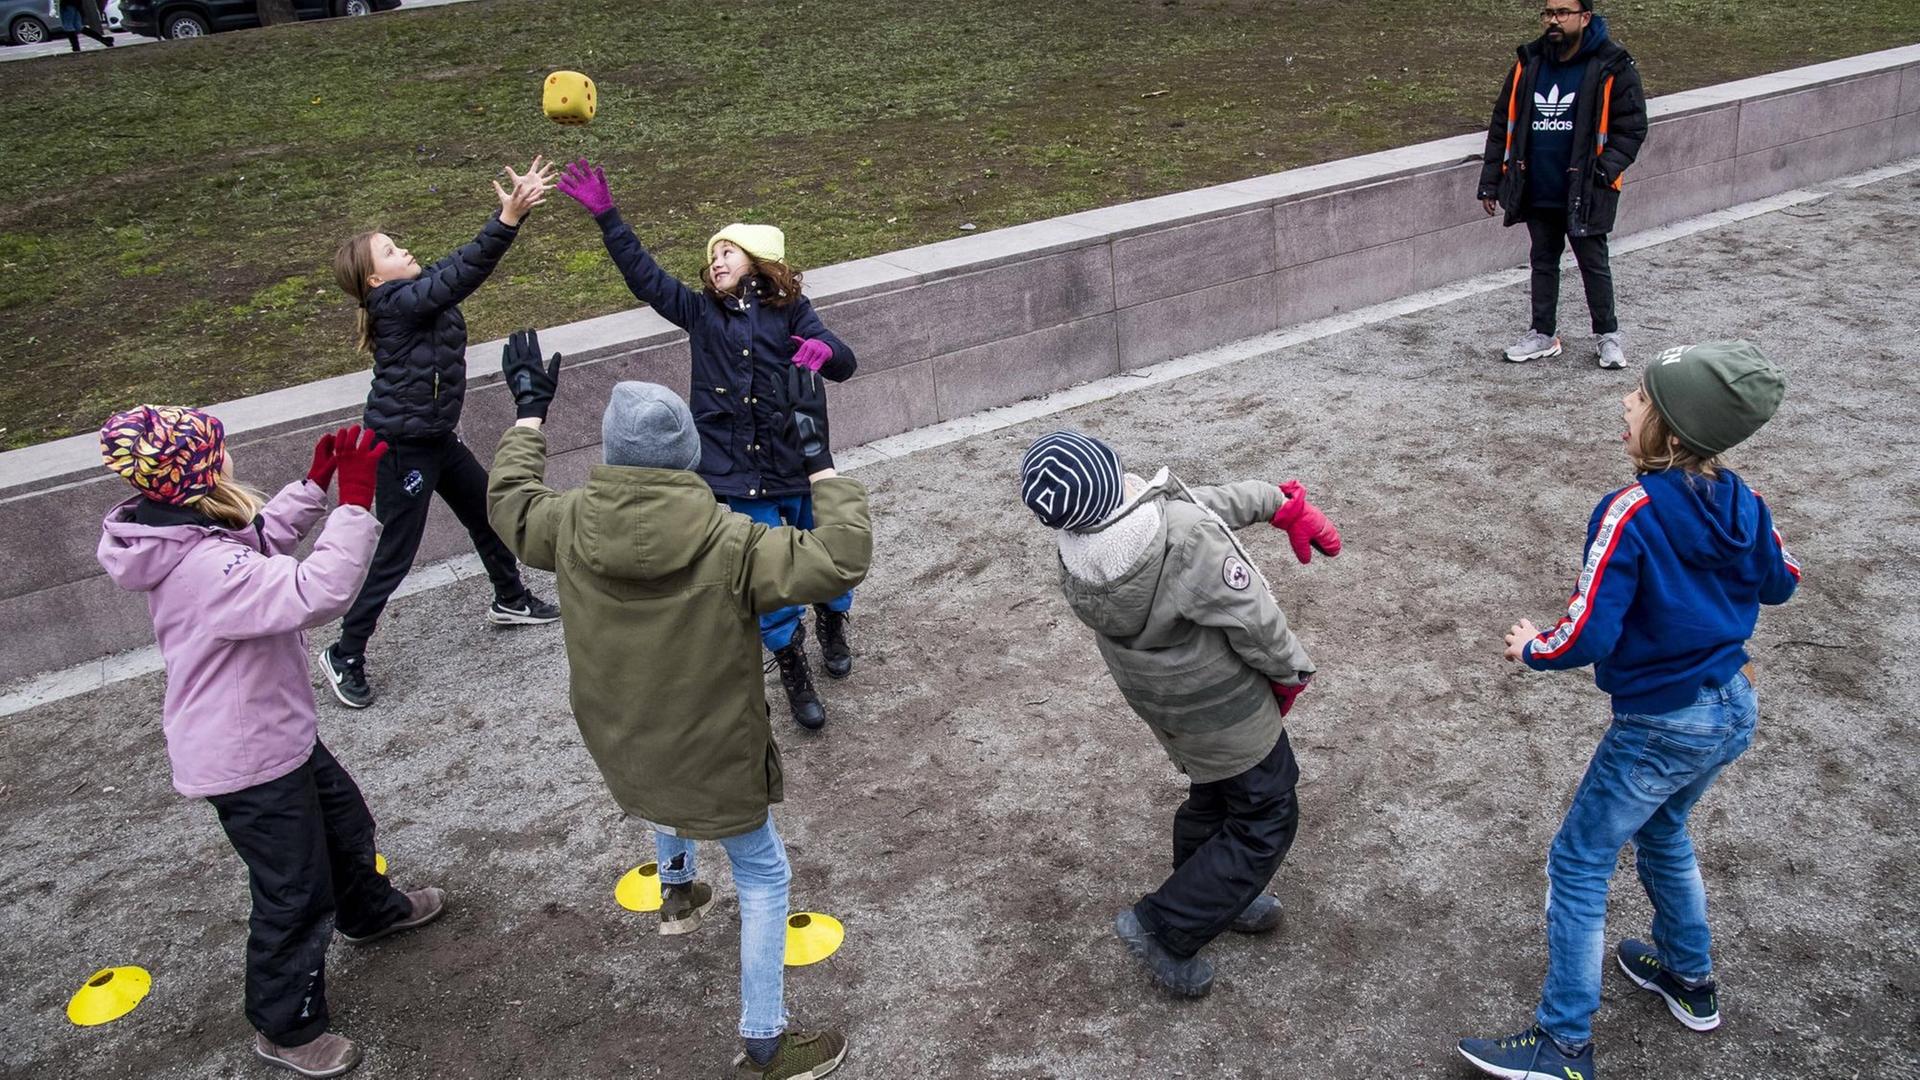 Mehrere Kinder spielen auf einem Spieplatz in Schweden zusammen mit einem Ball